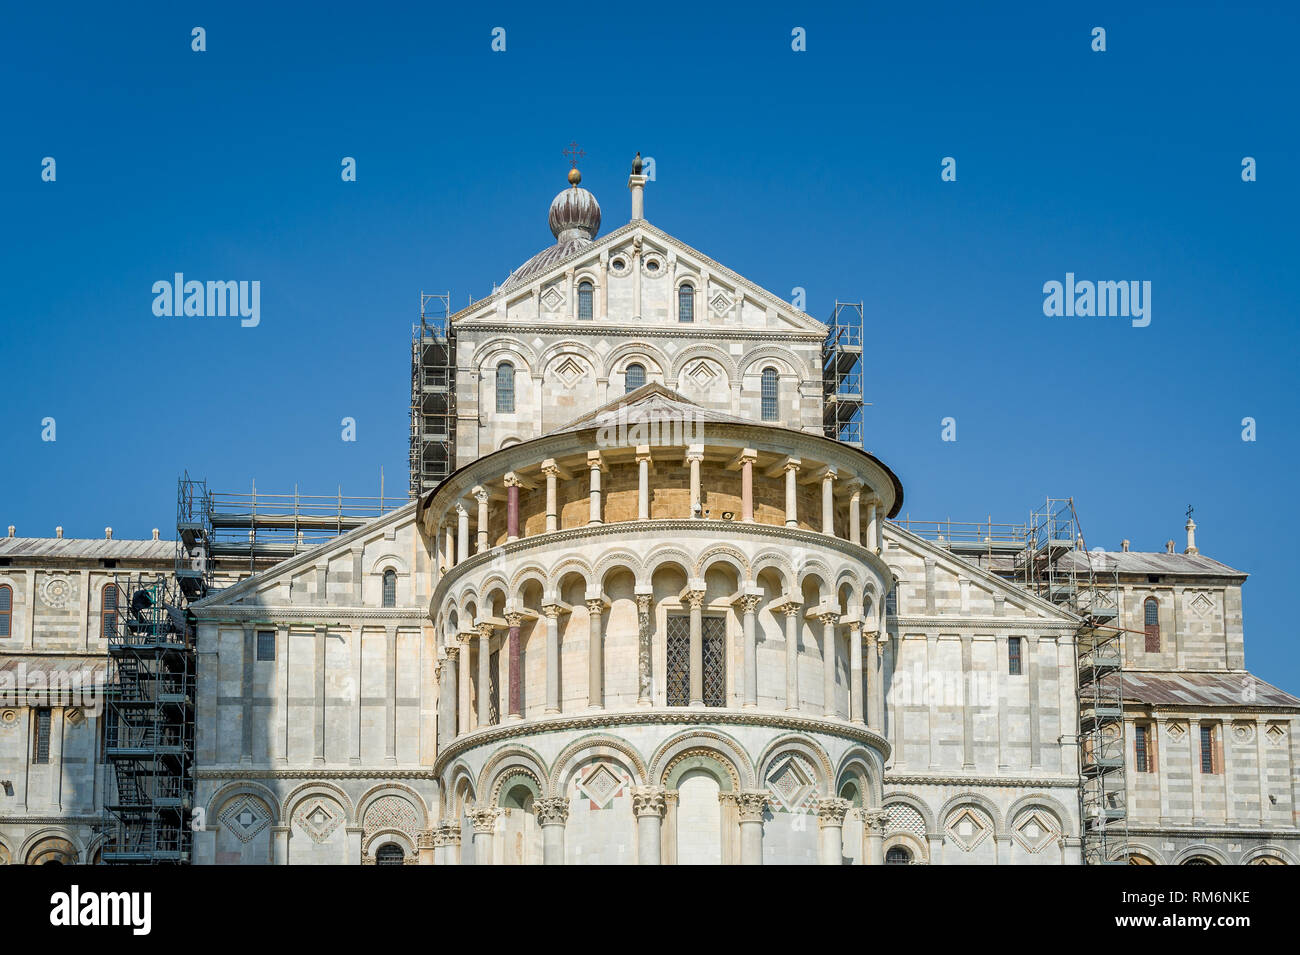 Duomi di Pisa Vorderansicht. Berühmte Toscana Wahrzeichen und zum UNESCO-Weltkulturerbe zählt. Italien. Stockfoto